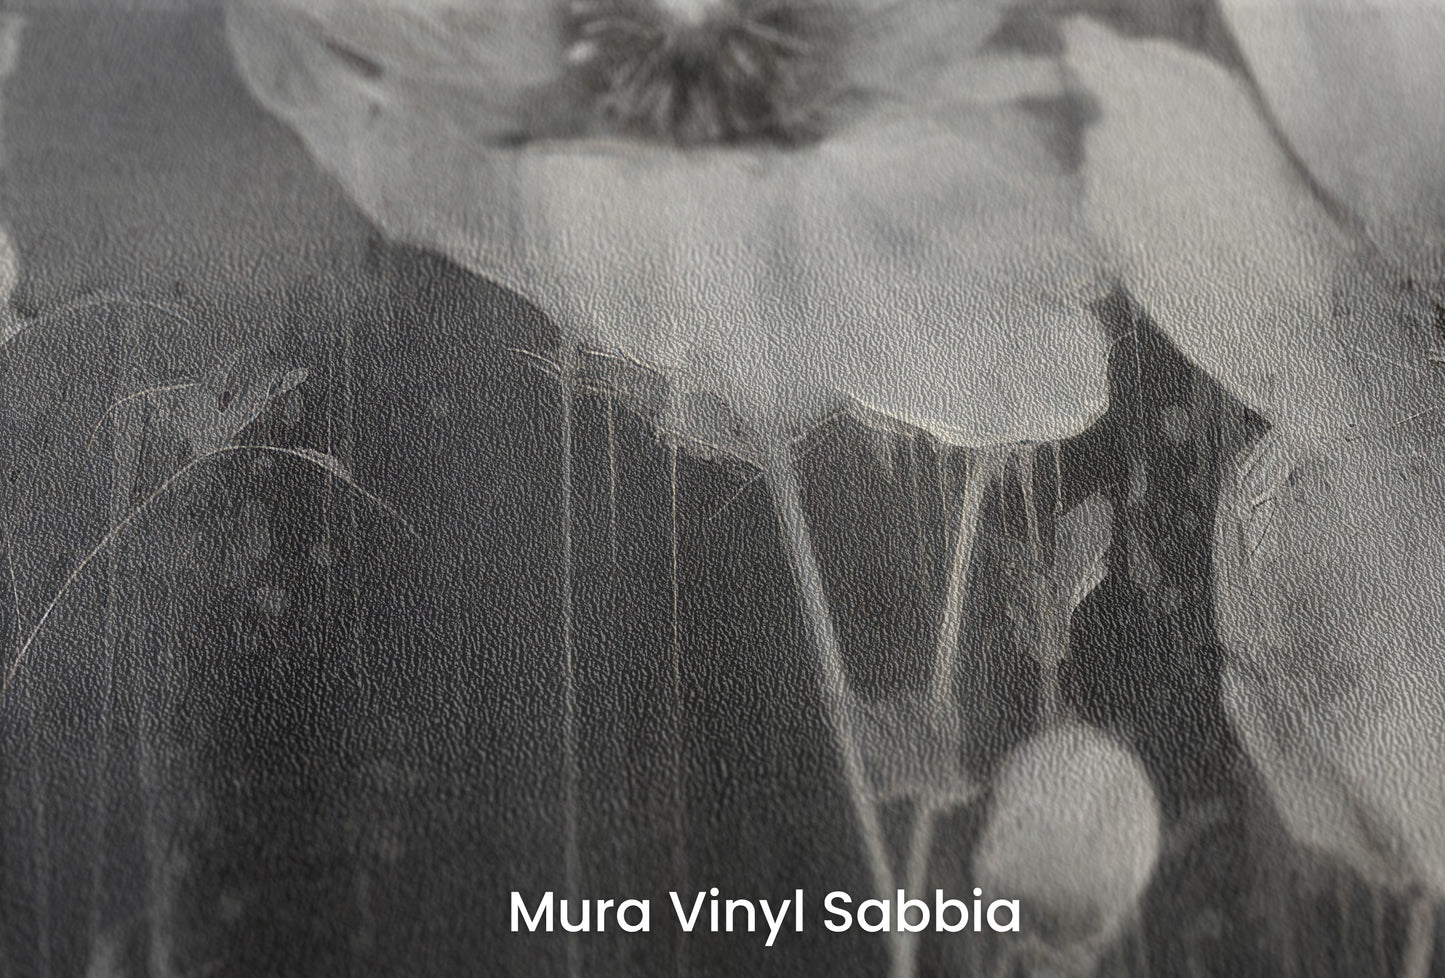 Zbliżenie na artystyczną fototapetę o nazwie NOIR FLORAL WHISPER na podłożu Mura Vinyl Sabbia struktura grubego ziarna piasku.